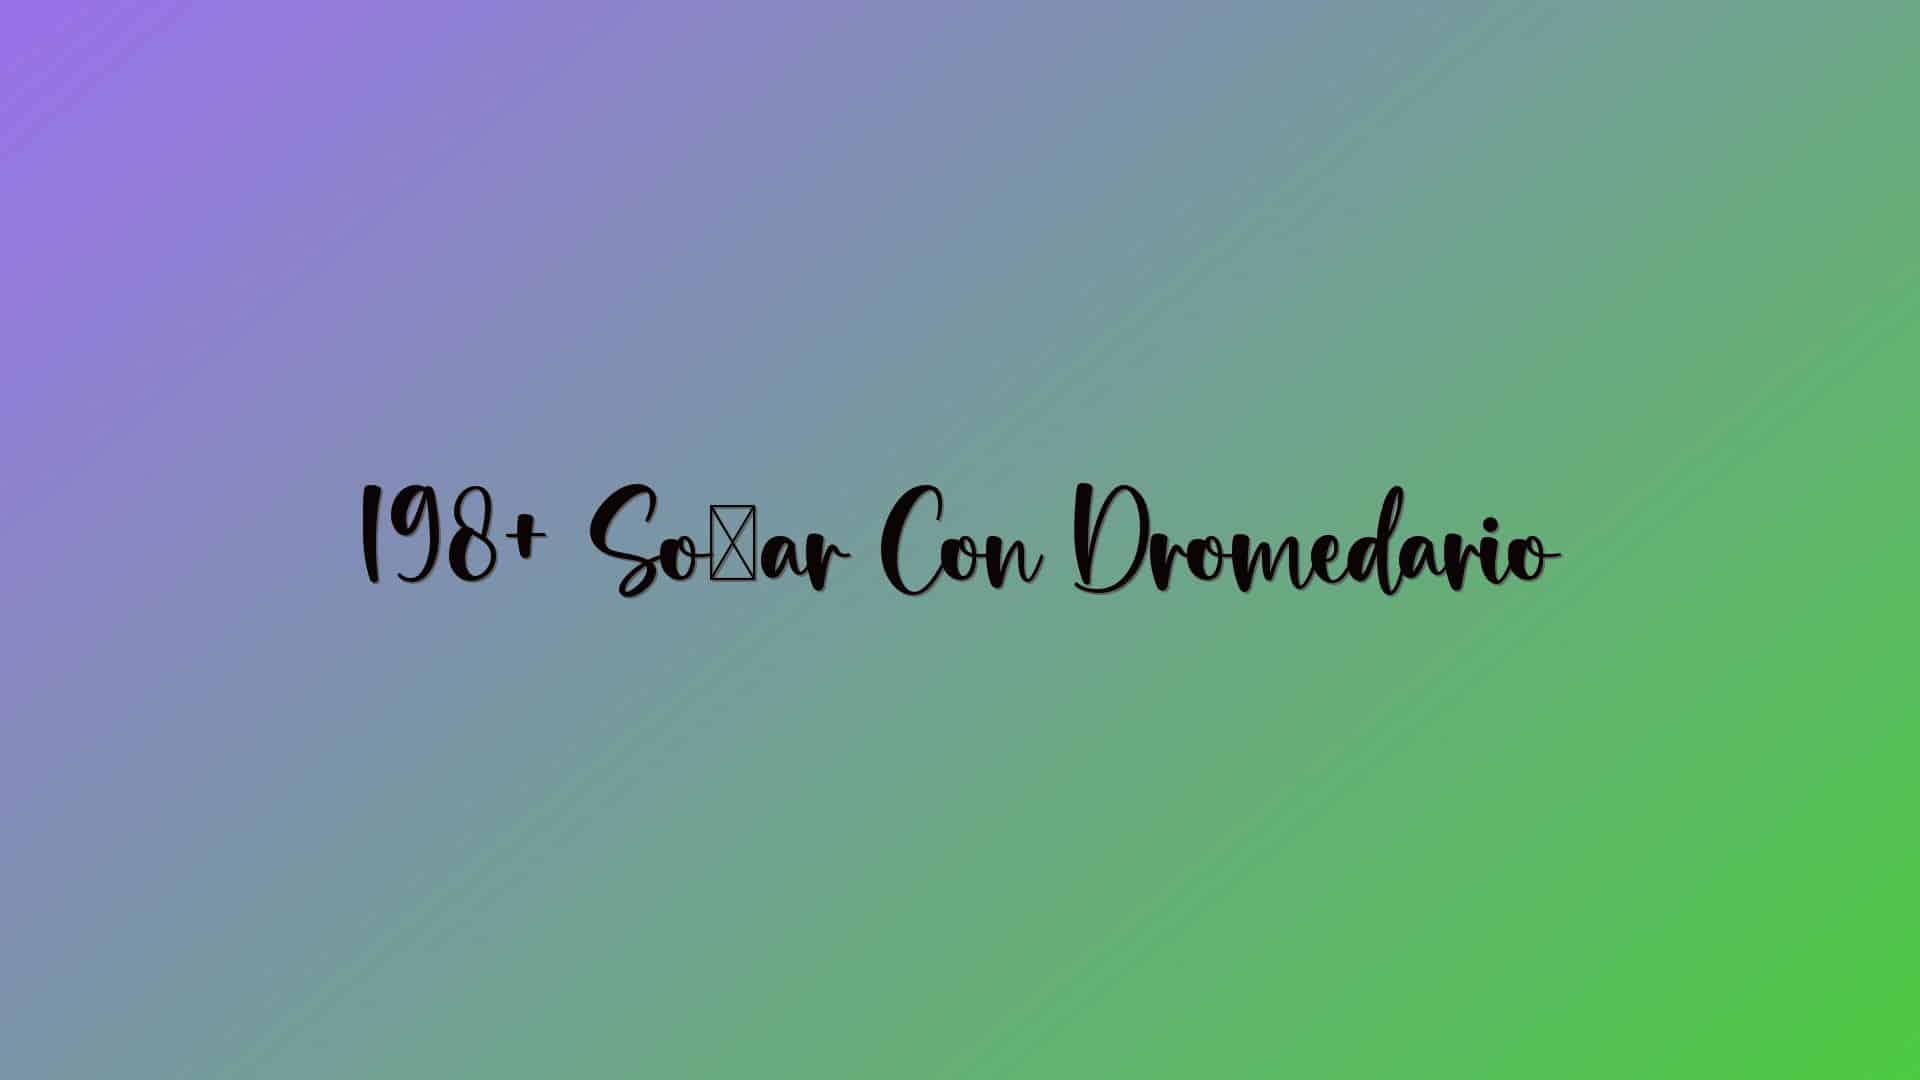 198+ Soñar Con Dromedario